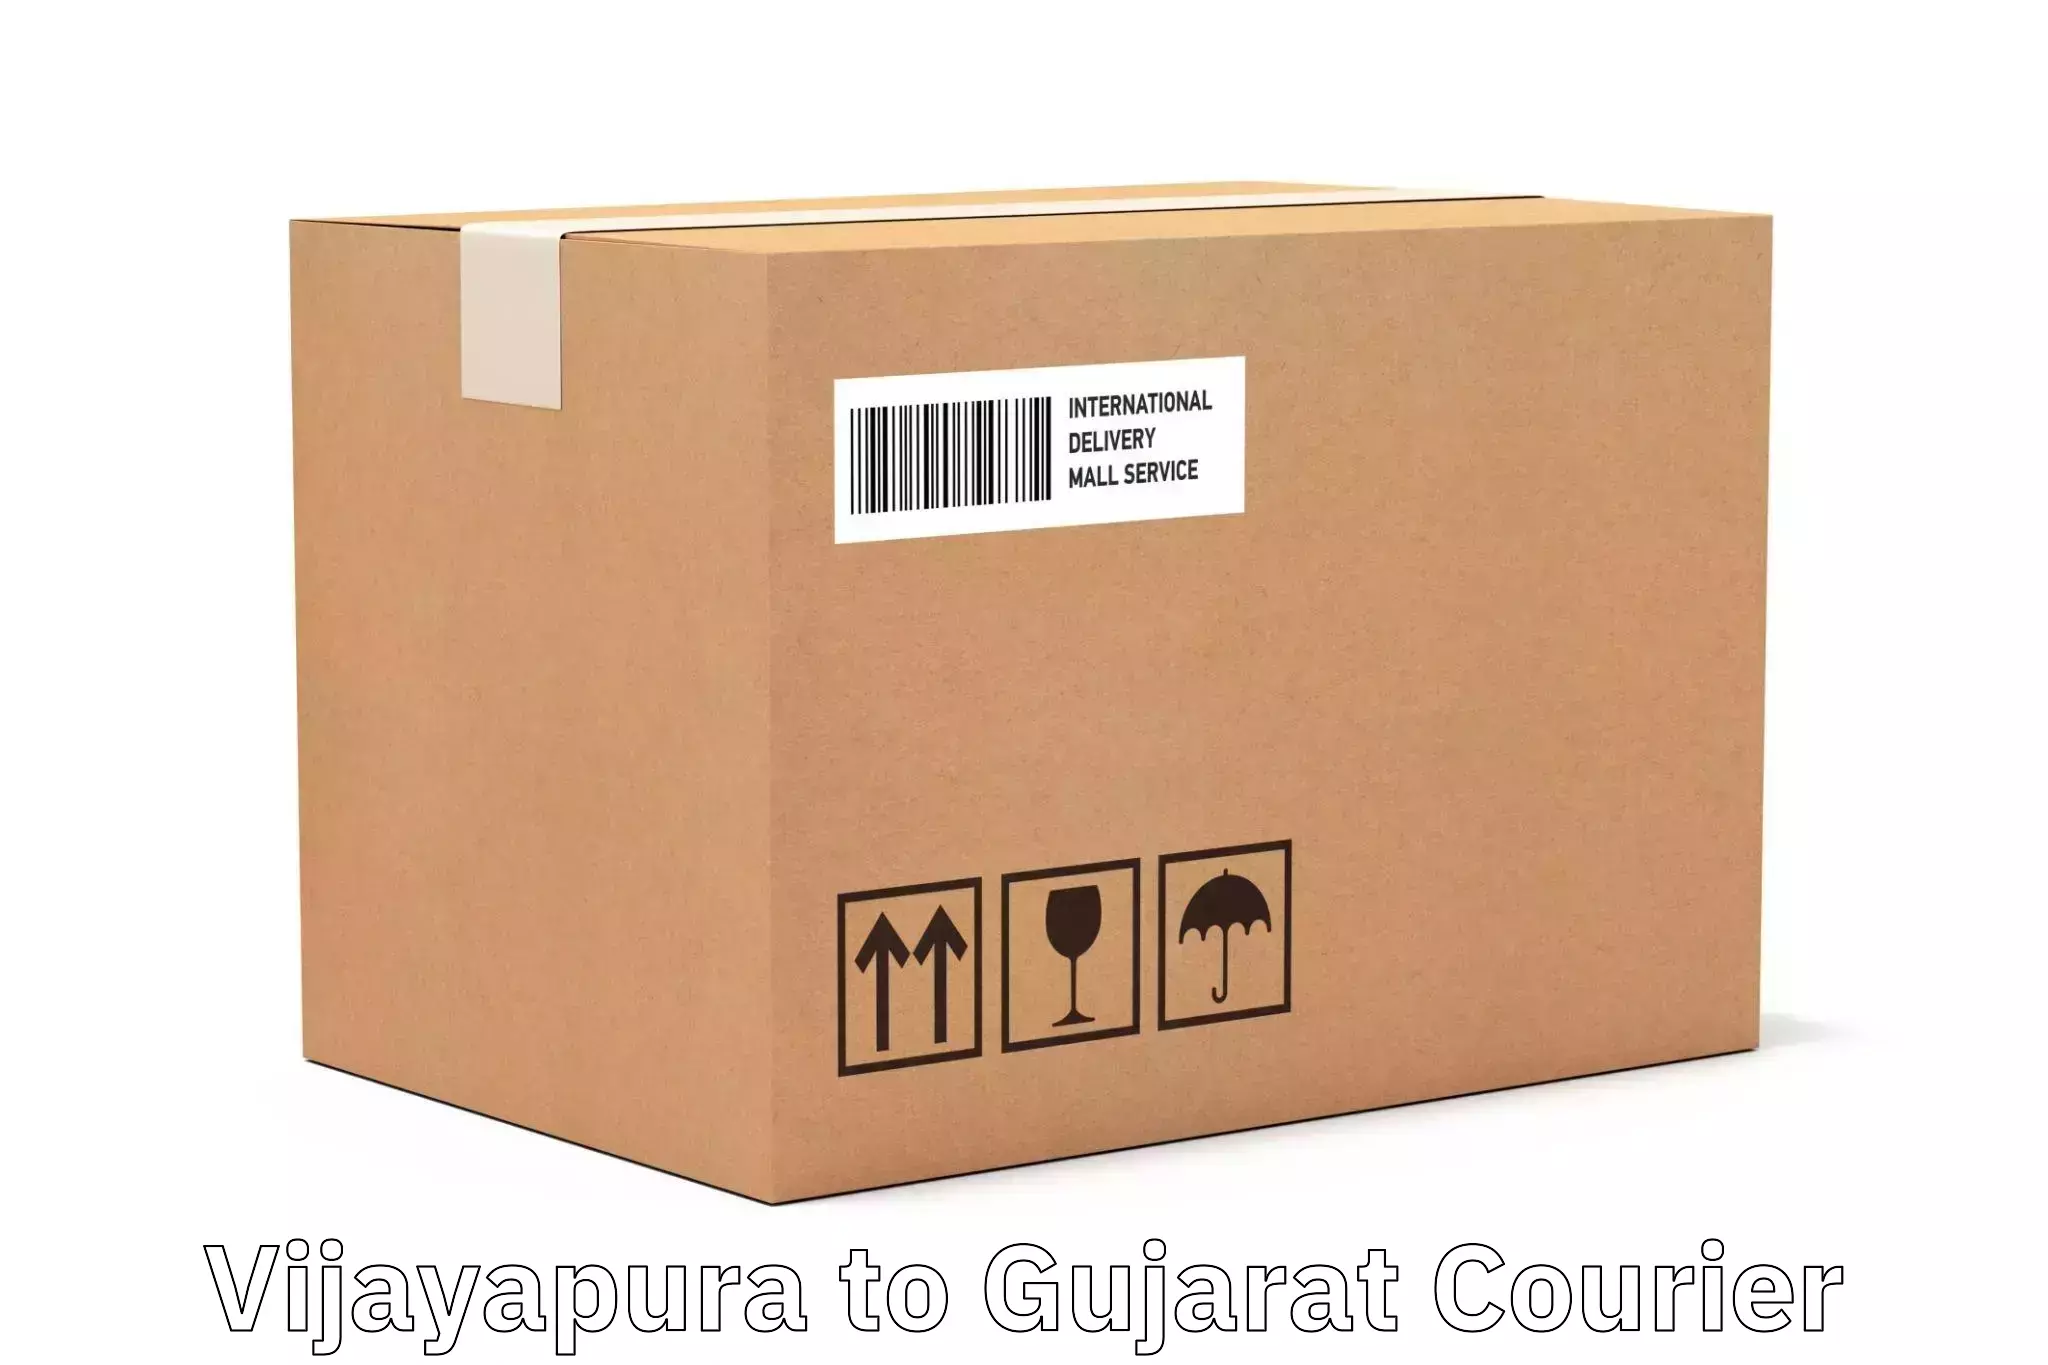 Round-the-clock parcel delivery Vijayapura to Vadodara